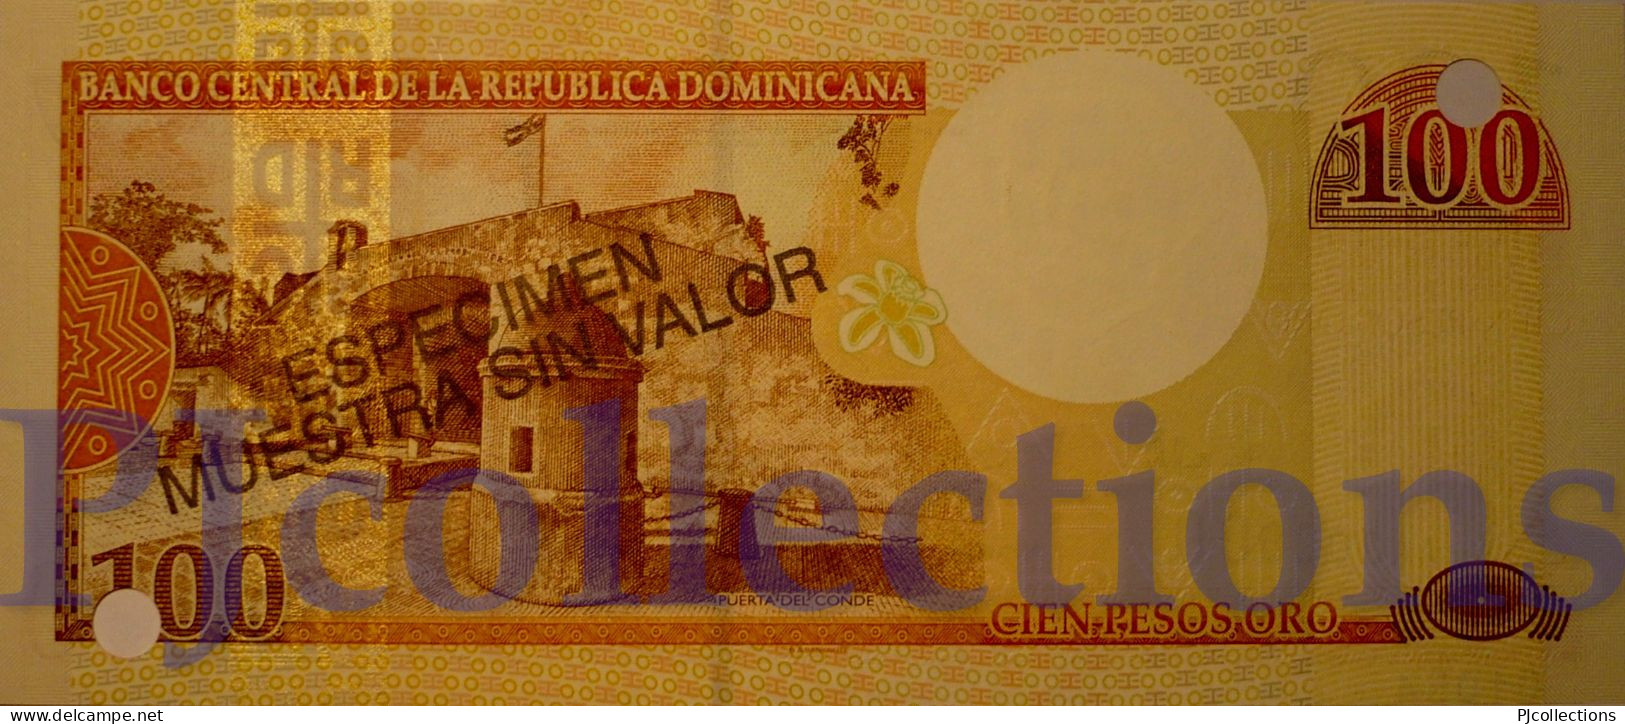 DOMINICAN REPUBLIC 100 PESOS ORO 2000 PICK 167s1 SPECIMEN UNC NUMBER "01054"" - Dominicaine